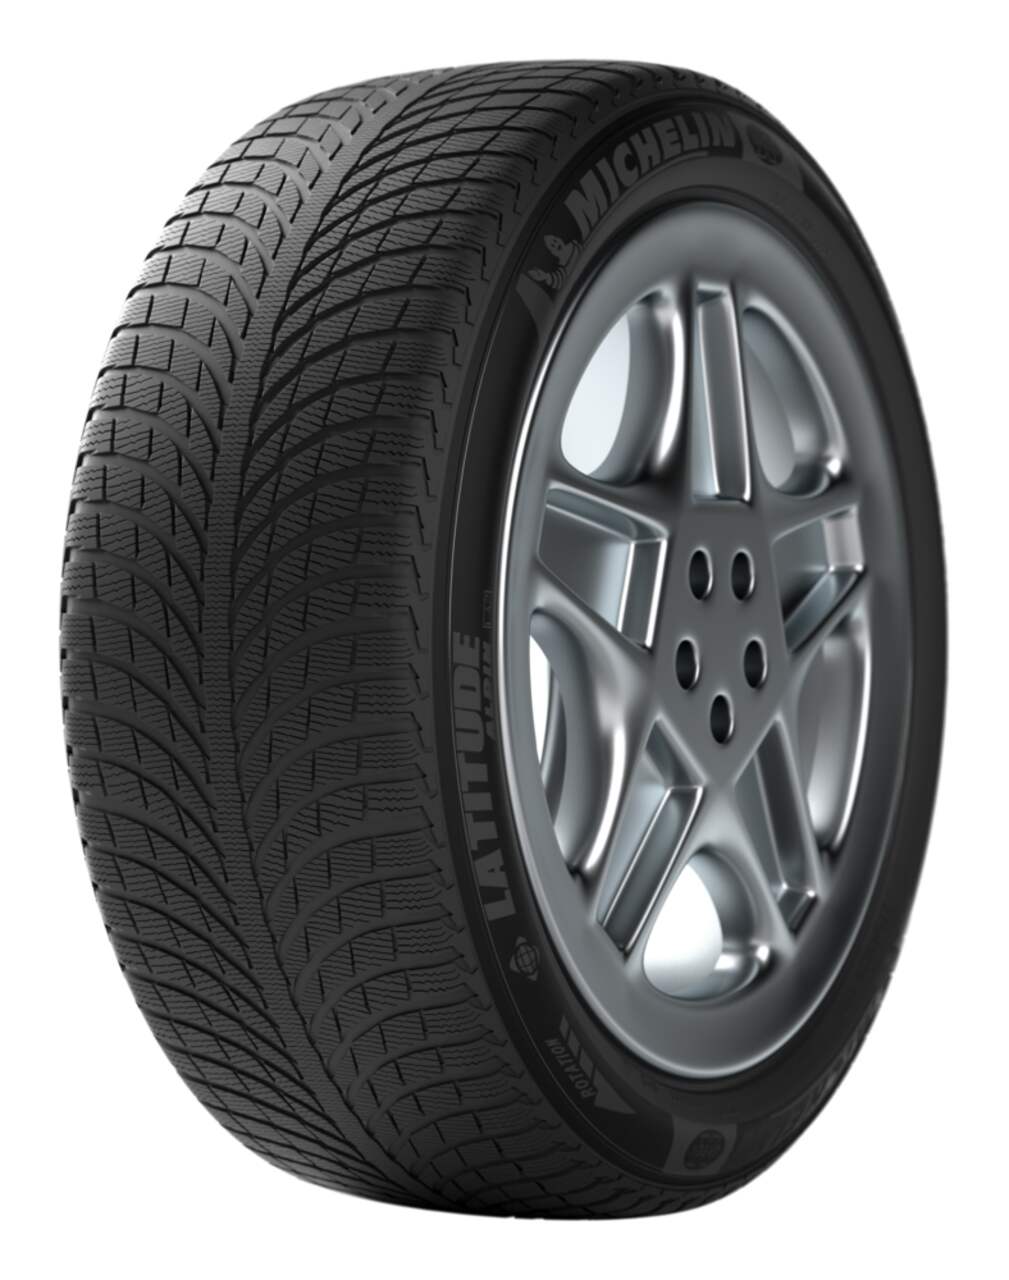 Michelin Latitude Alpin LA2 Winter Tire For Passenger & CUV | Canadian Tire